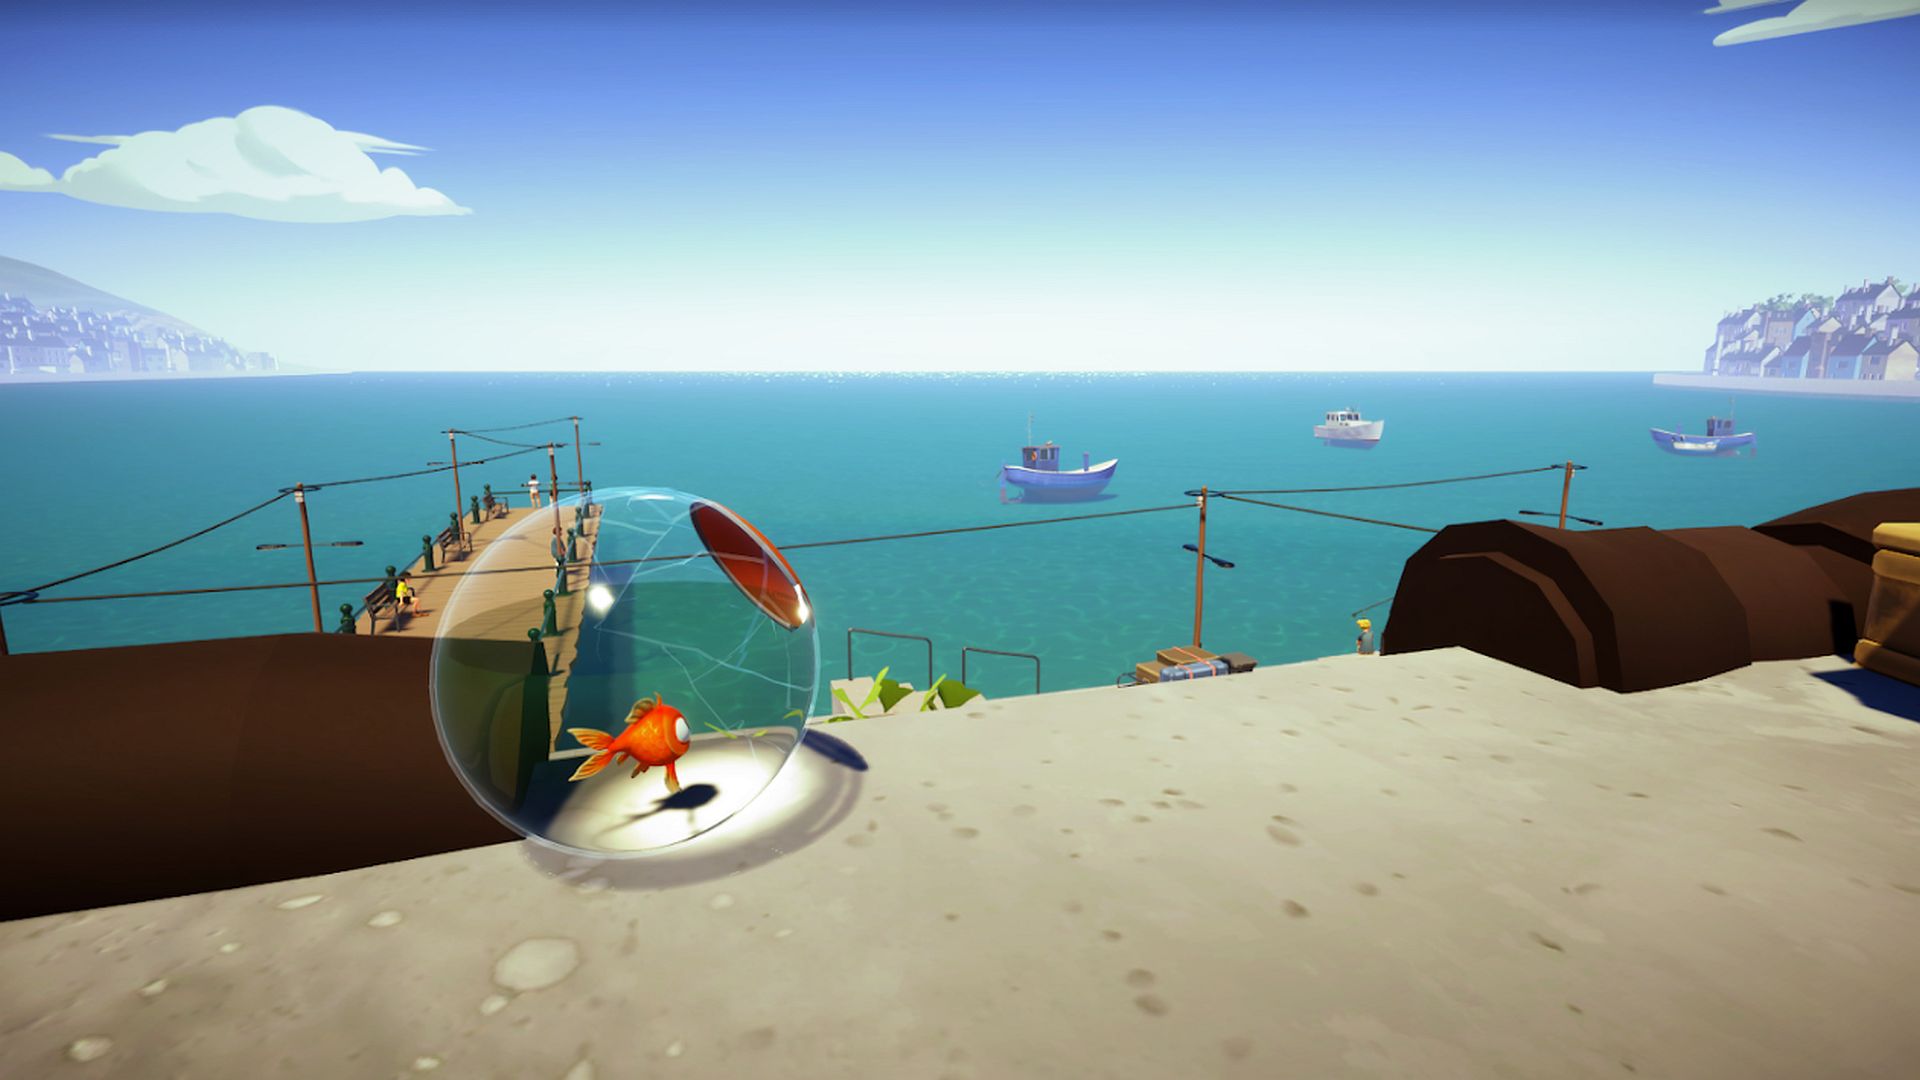 I Am Fish-ը հարվածում է DreamHack Beyond-ին ցուցադրությամբ, բարիքներով և Steam-ի նվեր քարտի նվերներով: